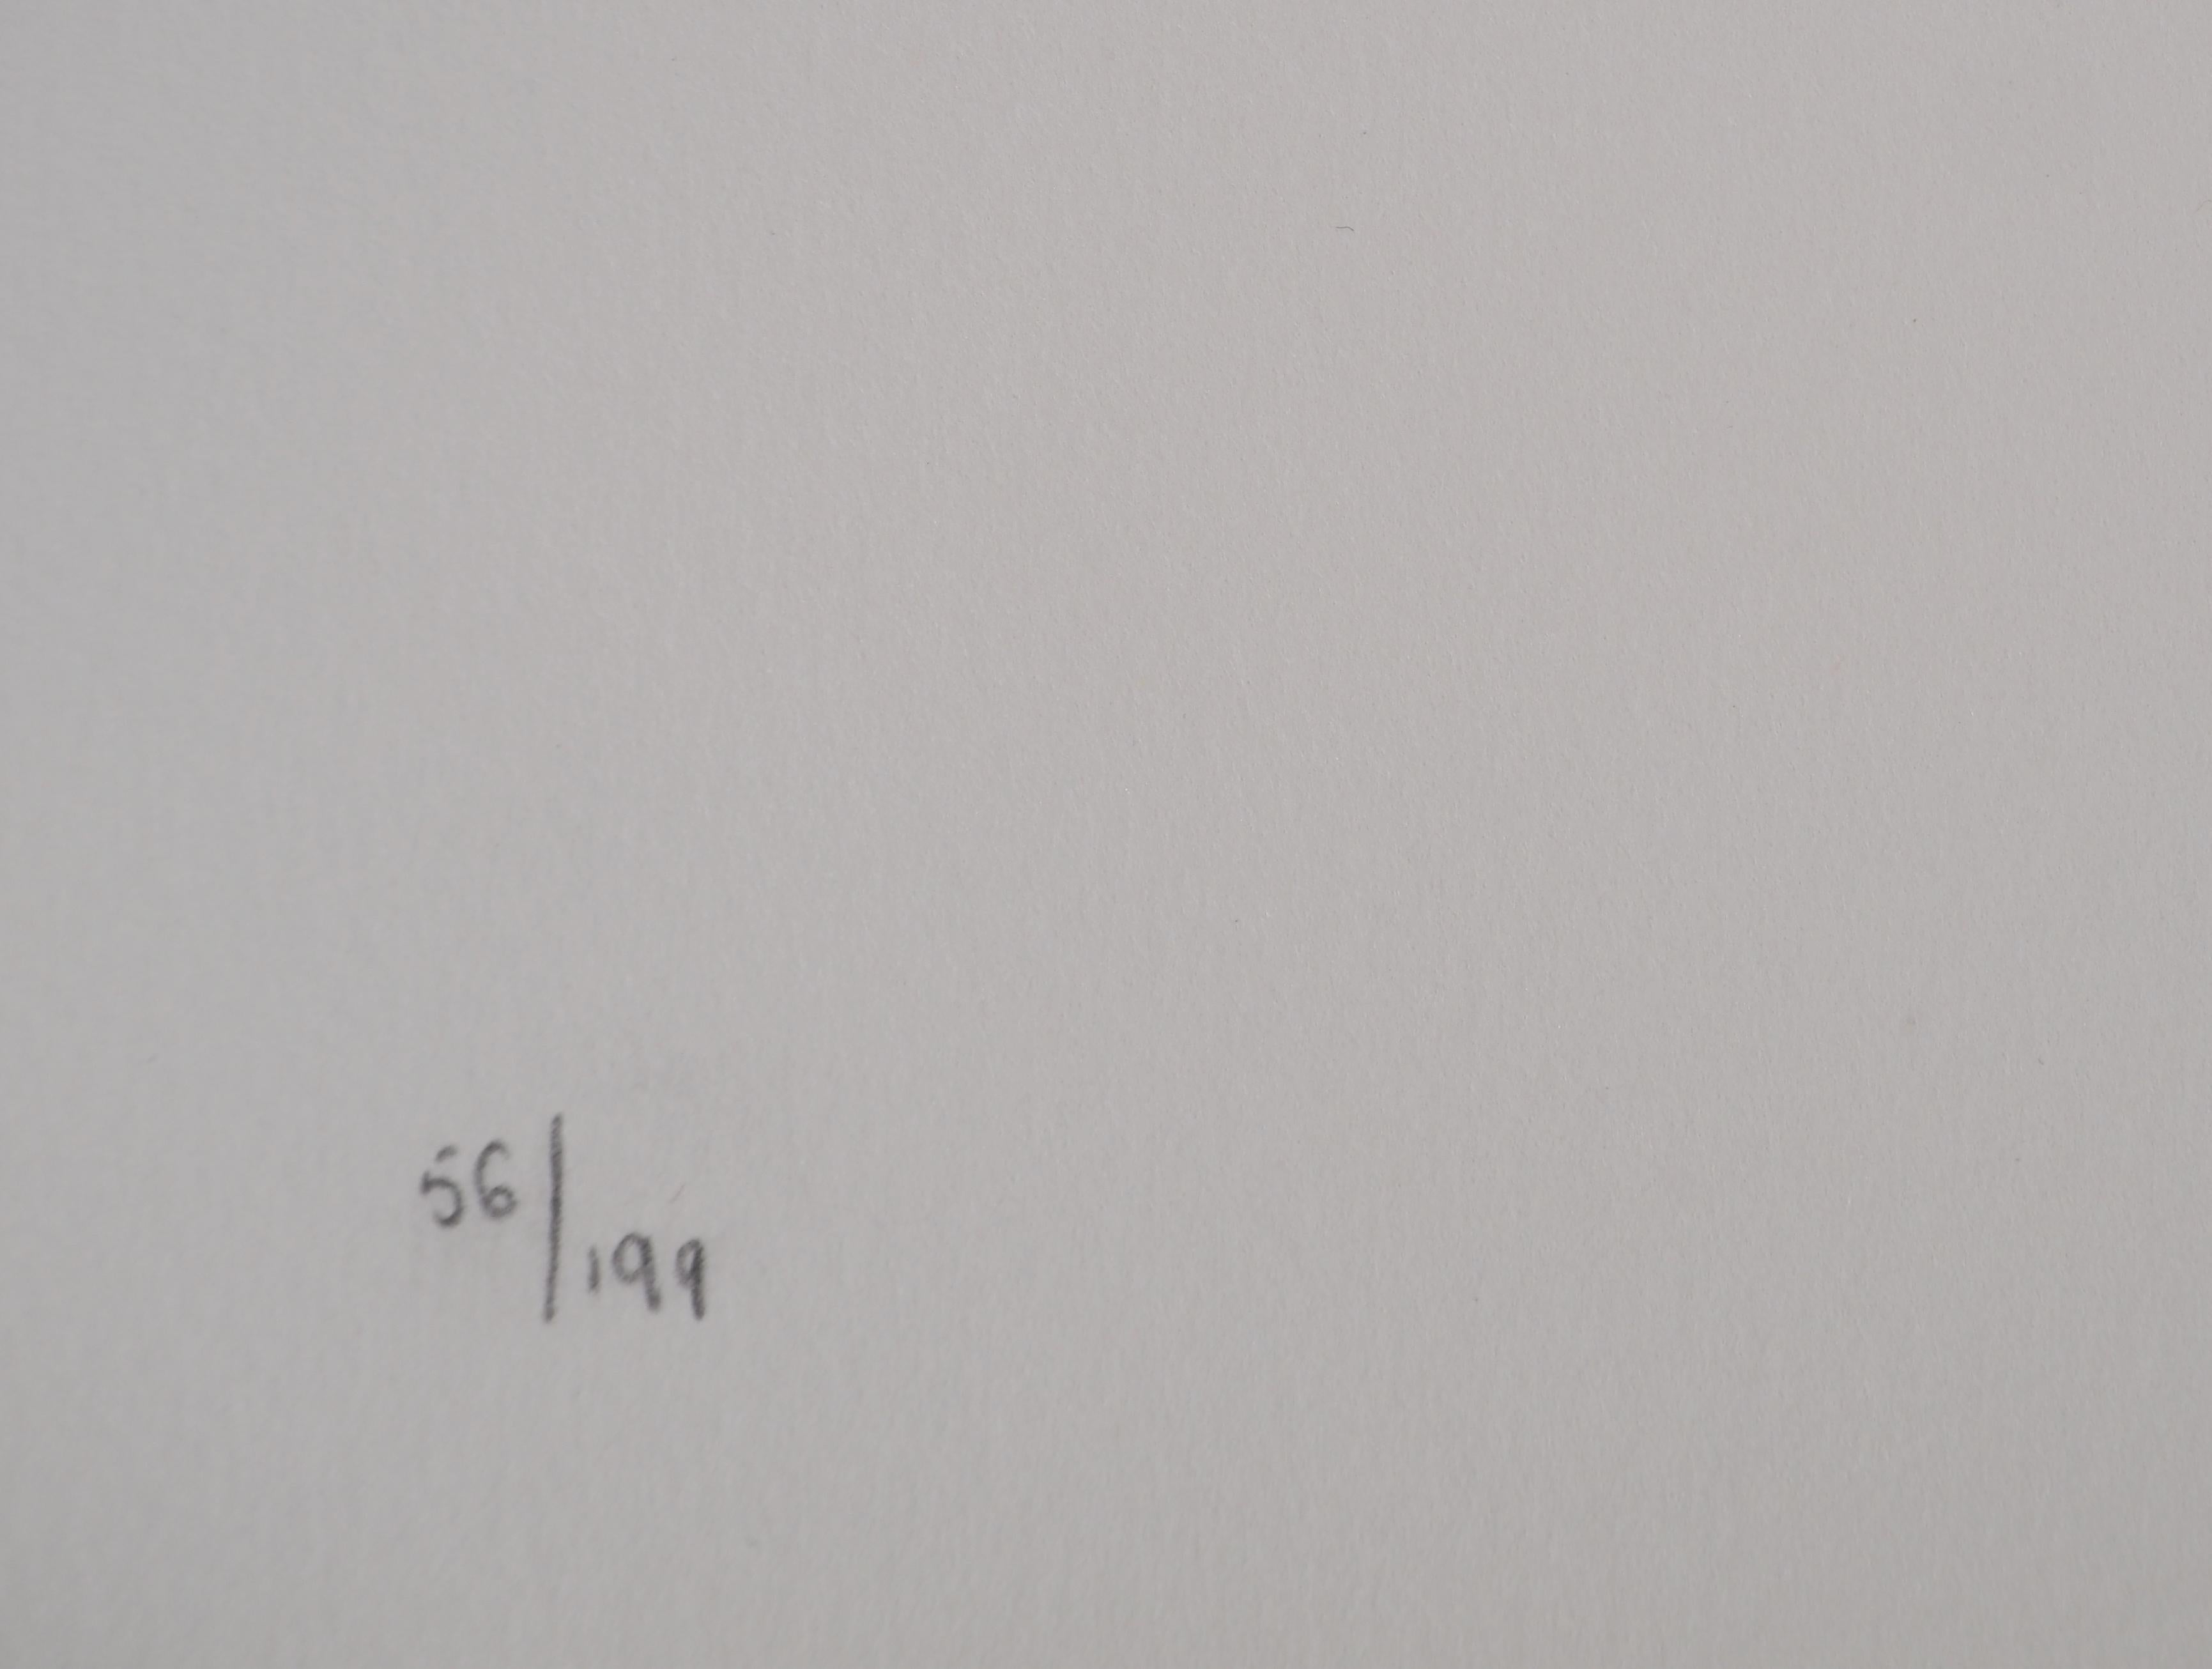 Jules Perahim (1914-2008)
Menorah : Lumière d'espoir, 1974

Lithographie originale
Signé au crayon par l'artiste.
Numéroté / 199
Sur vellum d'Arches 56 x 38 cm (c. 22 x 15 inches)

INFORMATION : Extrait du portfolio 